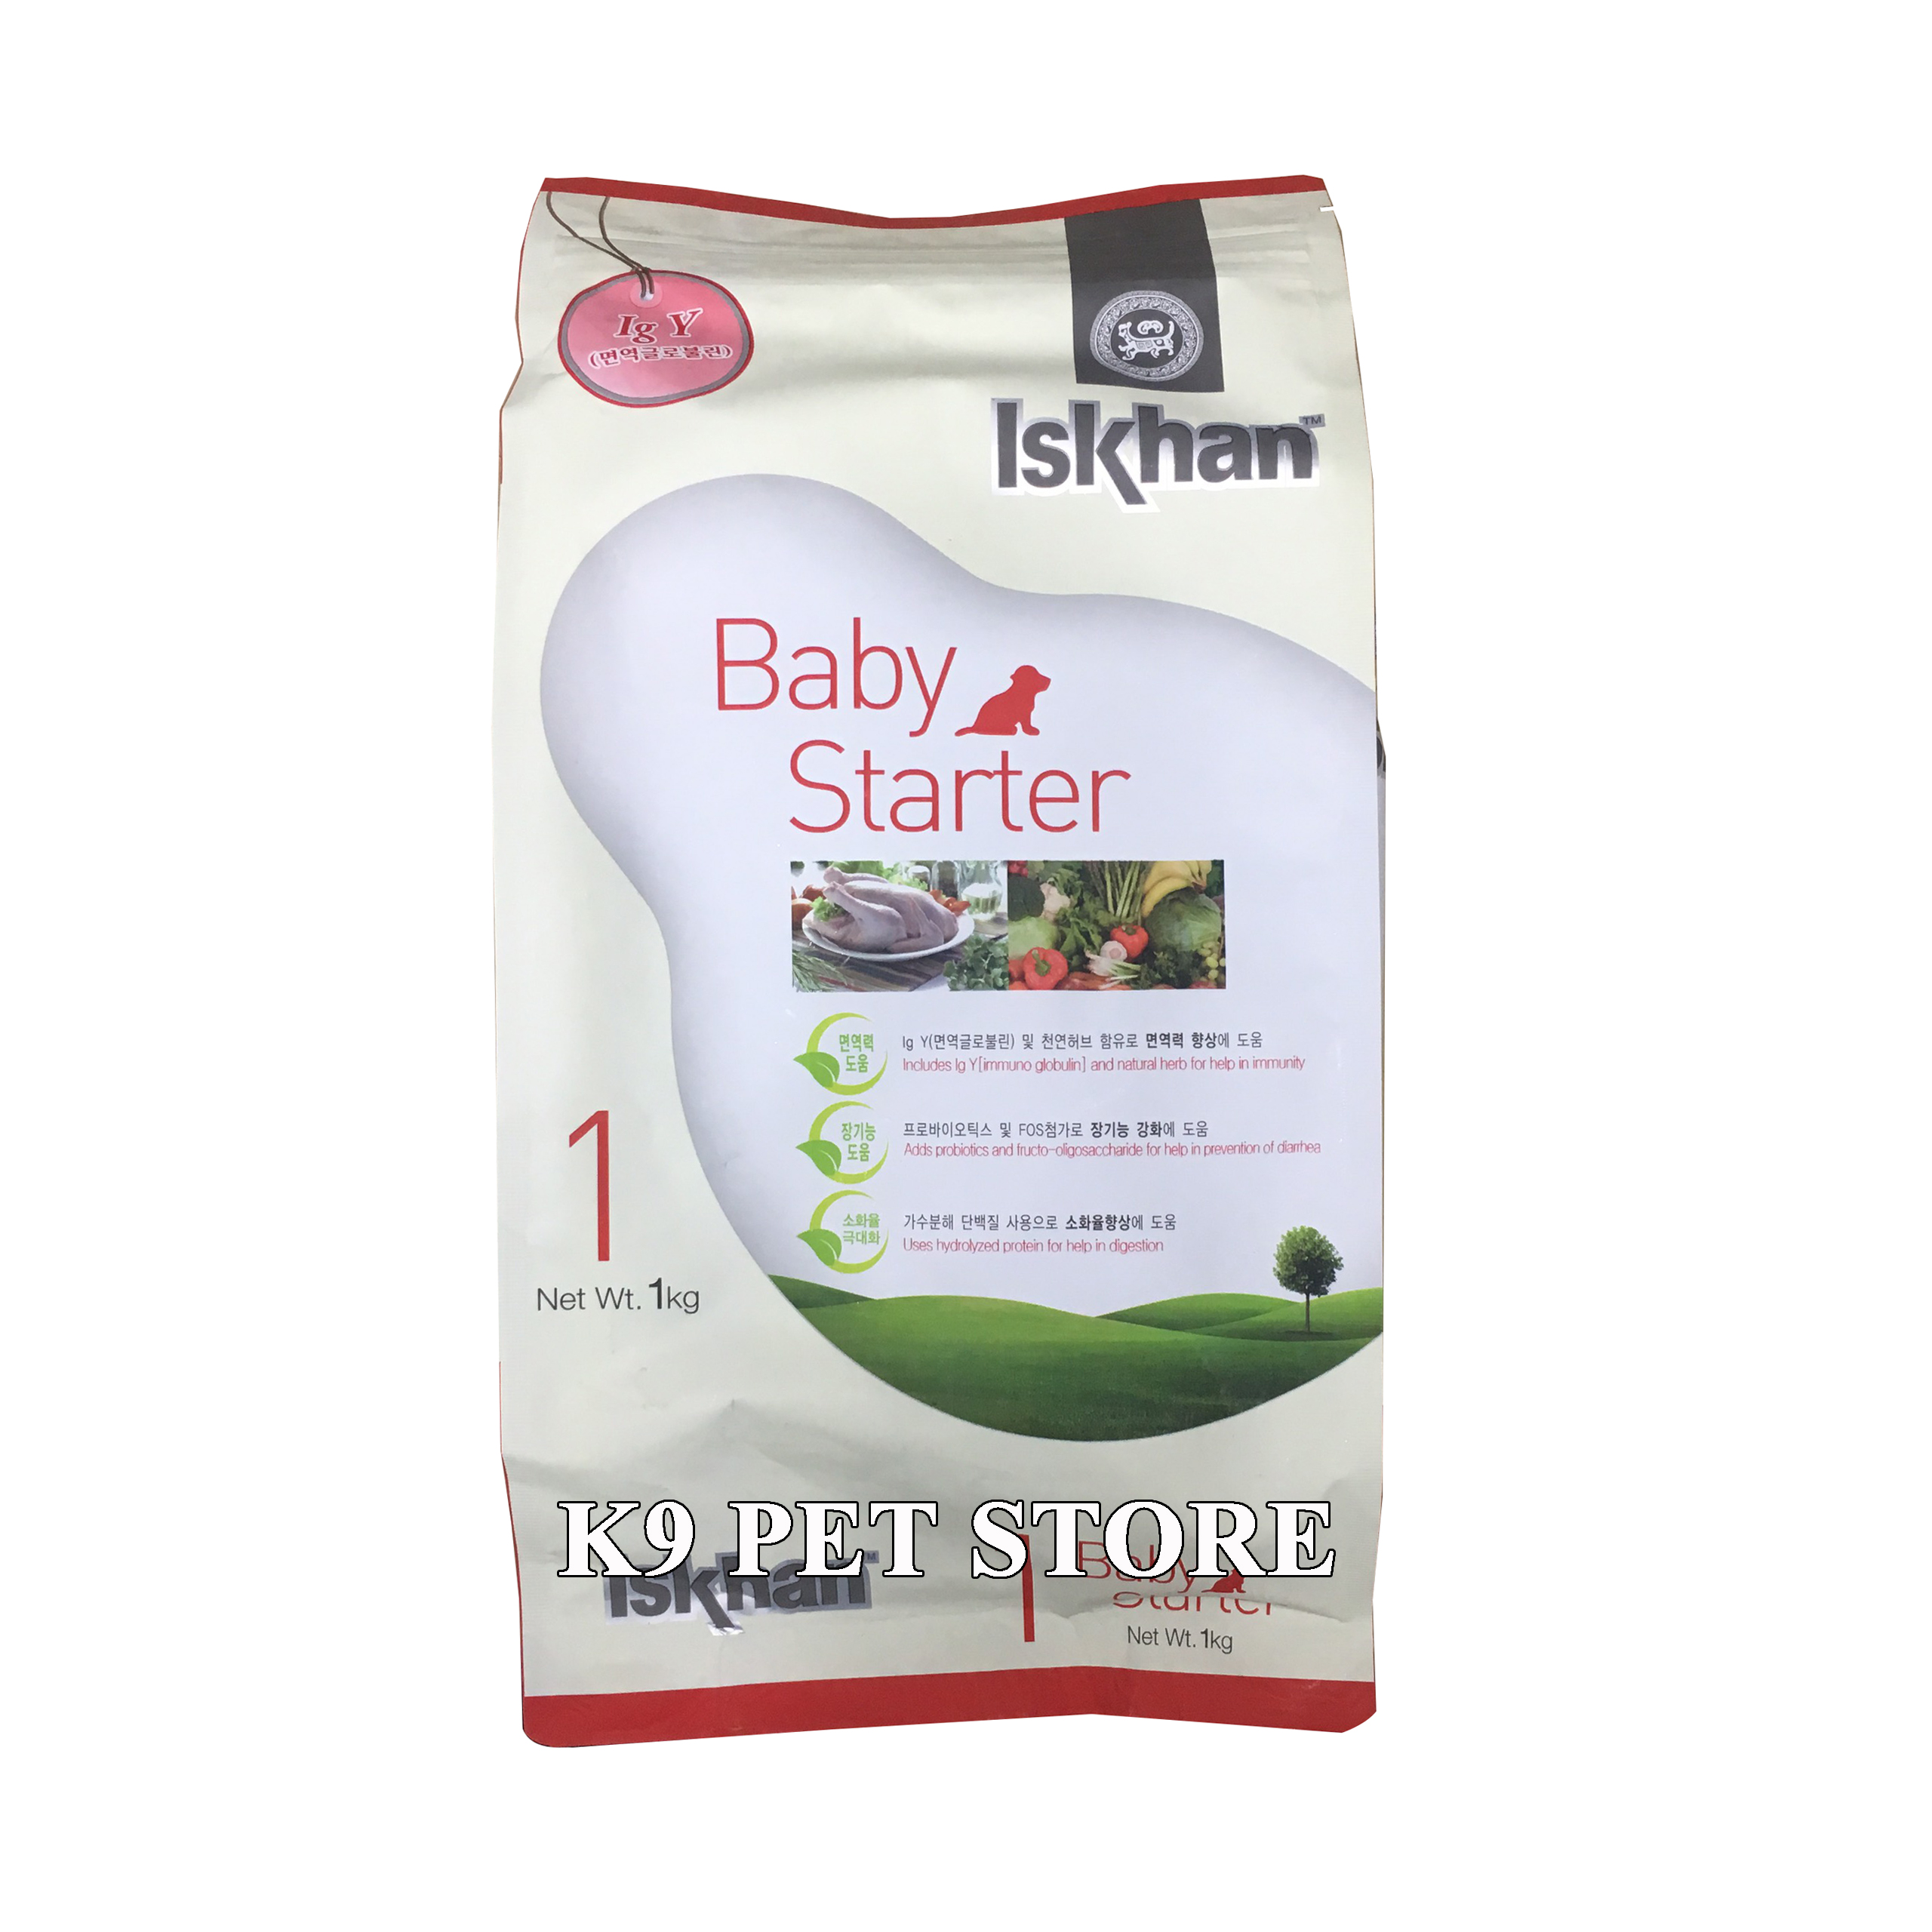 Thức ăn Iskhan Baby Starter số 1 cho chó con dưới 4 tháng tuổi 1kg